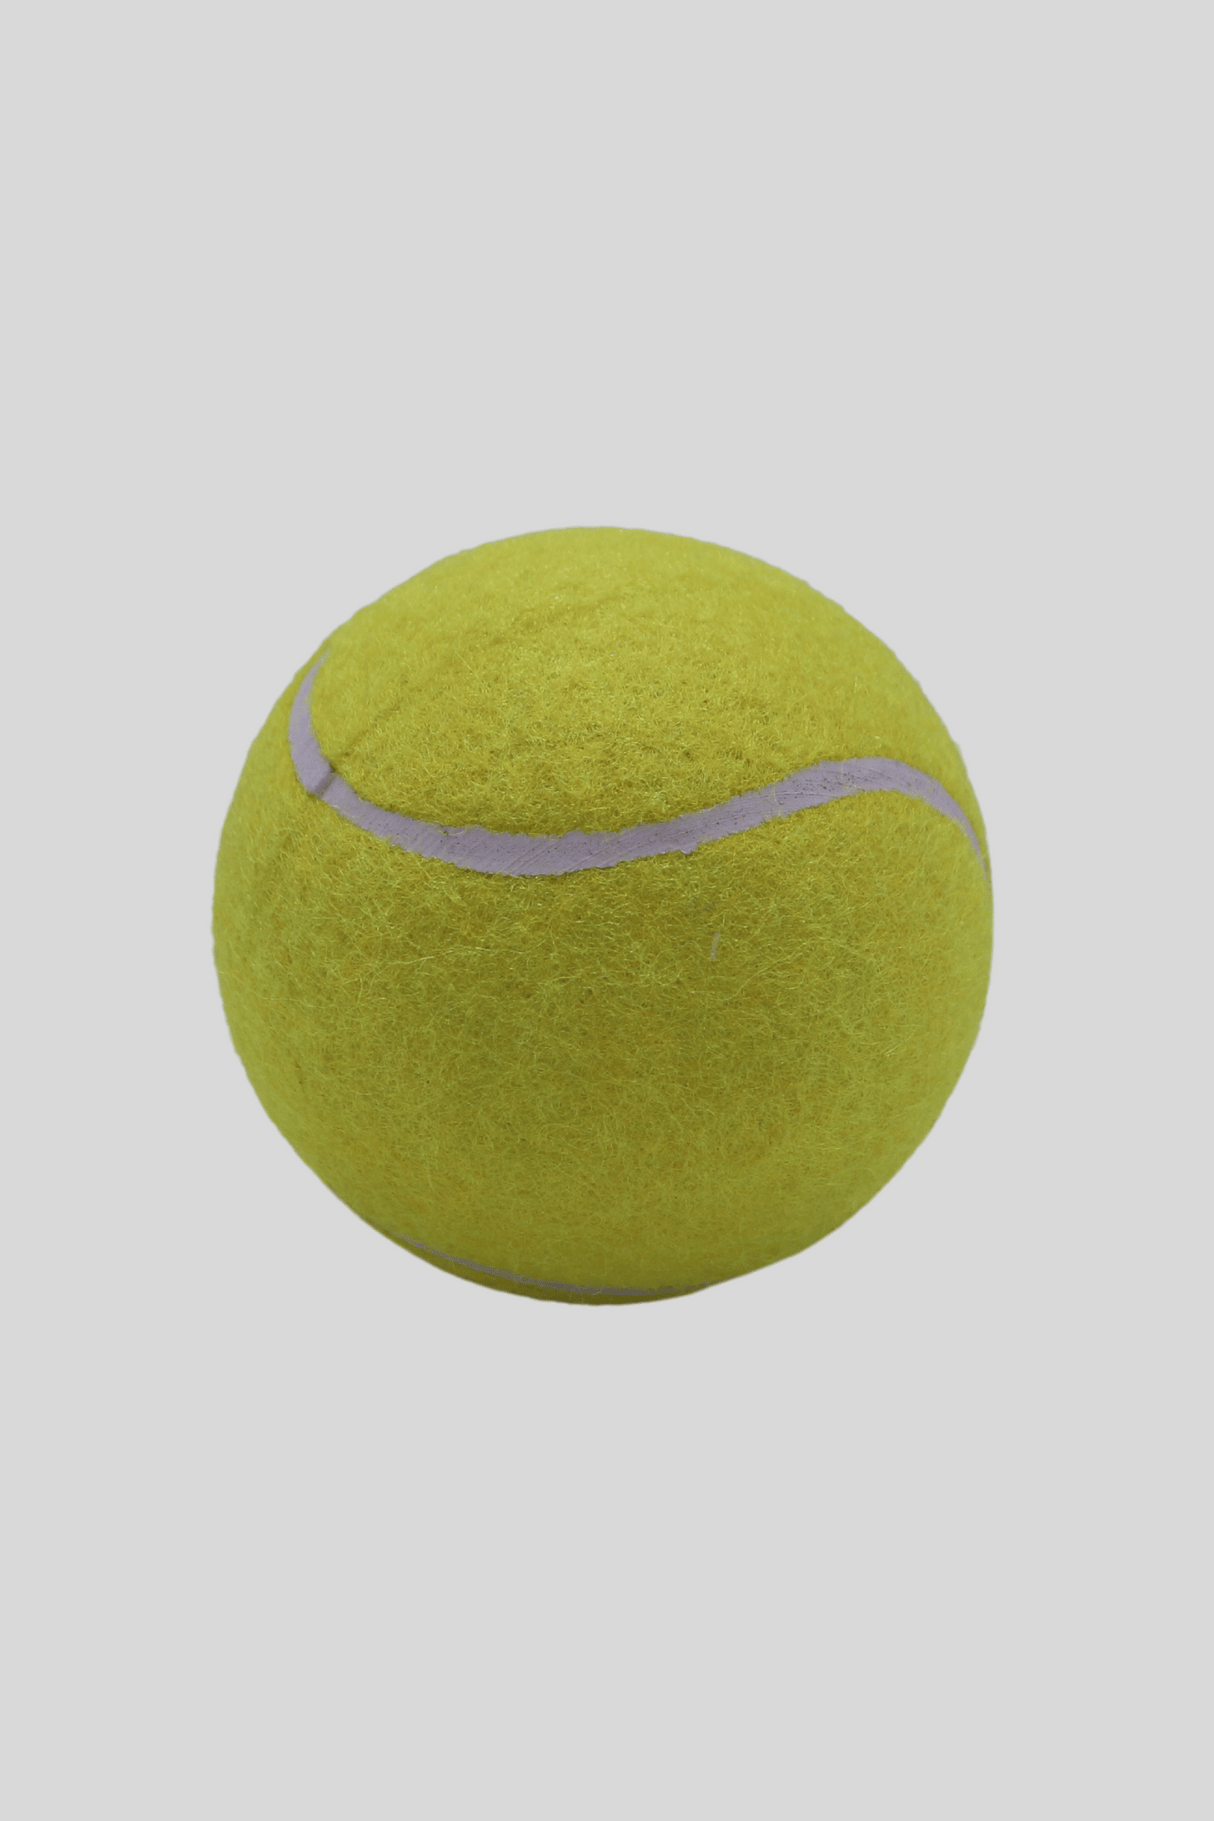 ckt tennis ball kk&plain pure